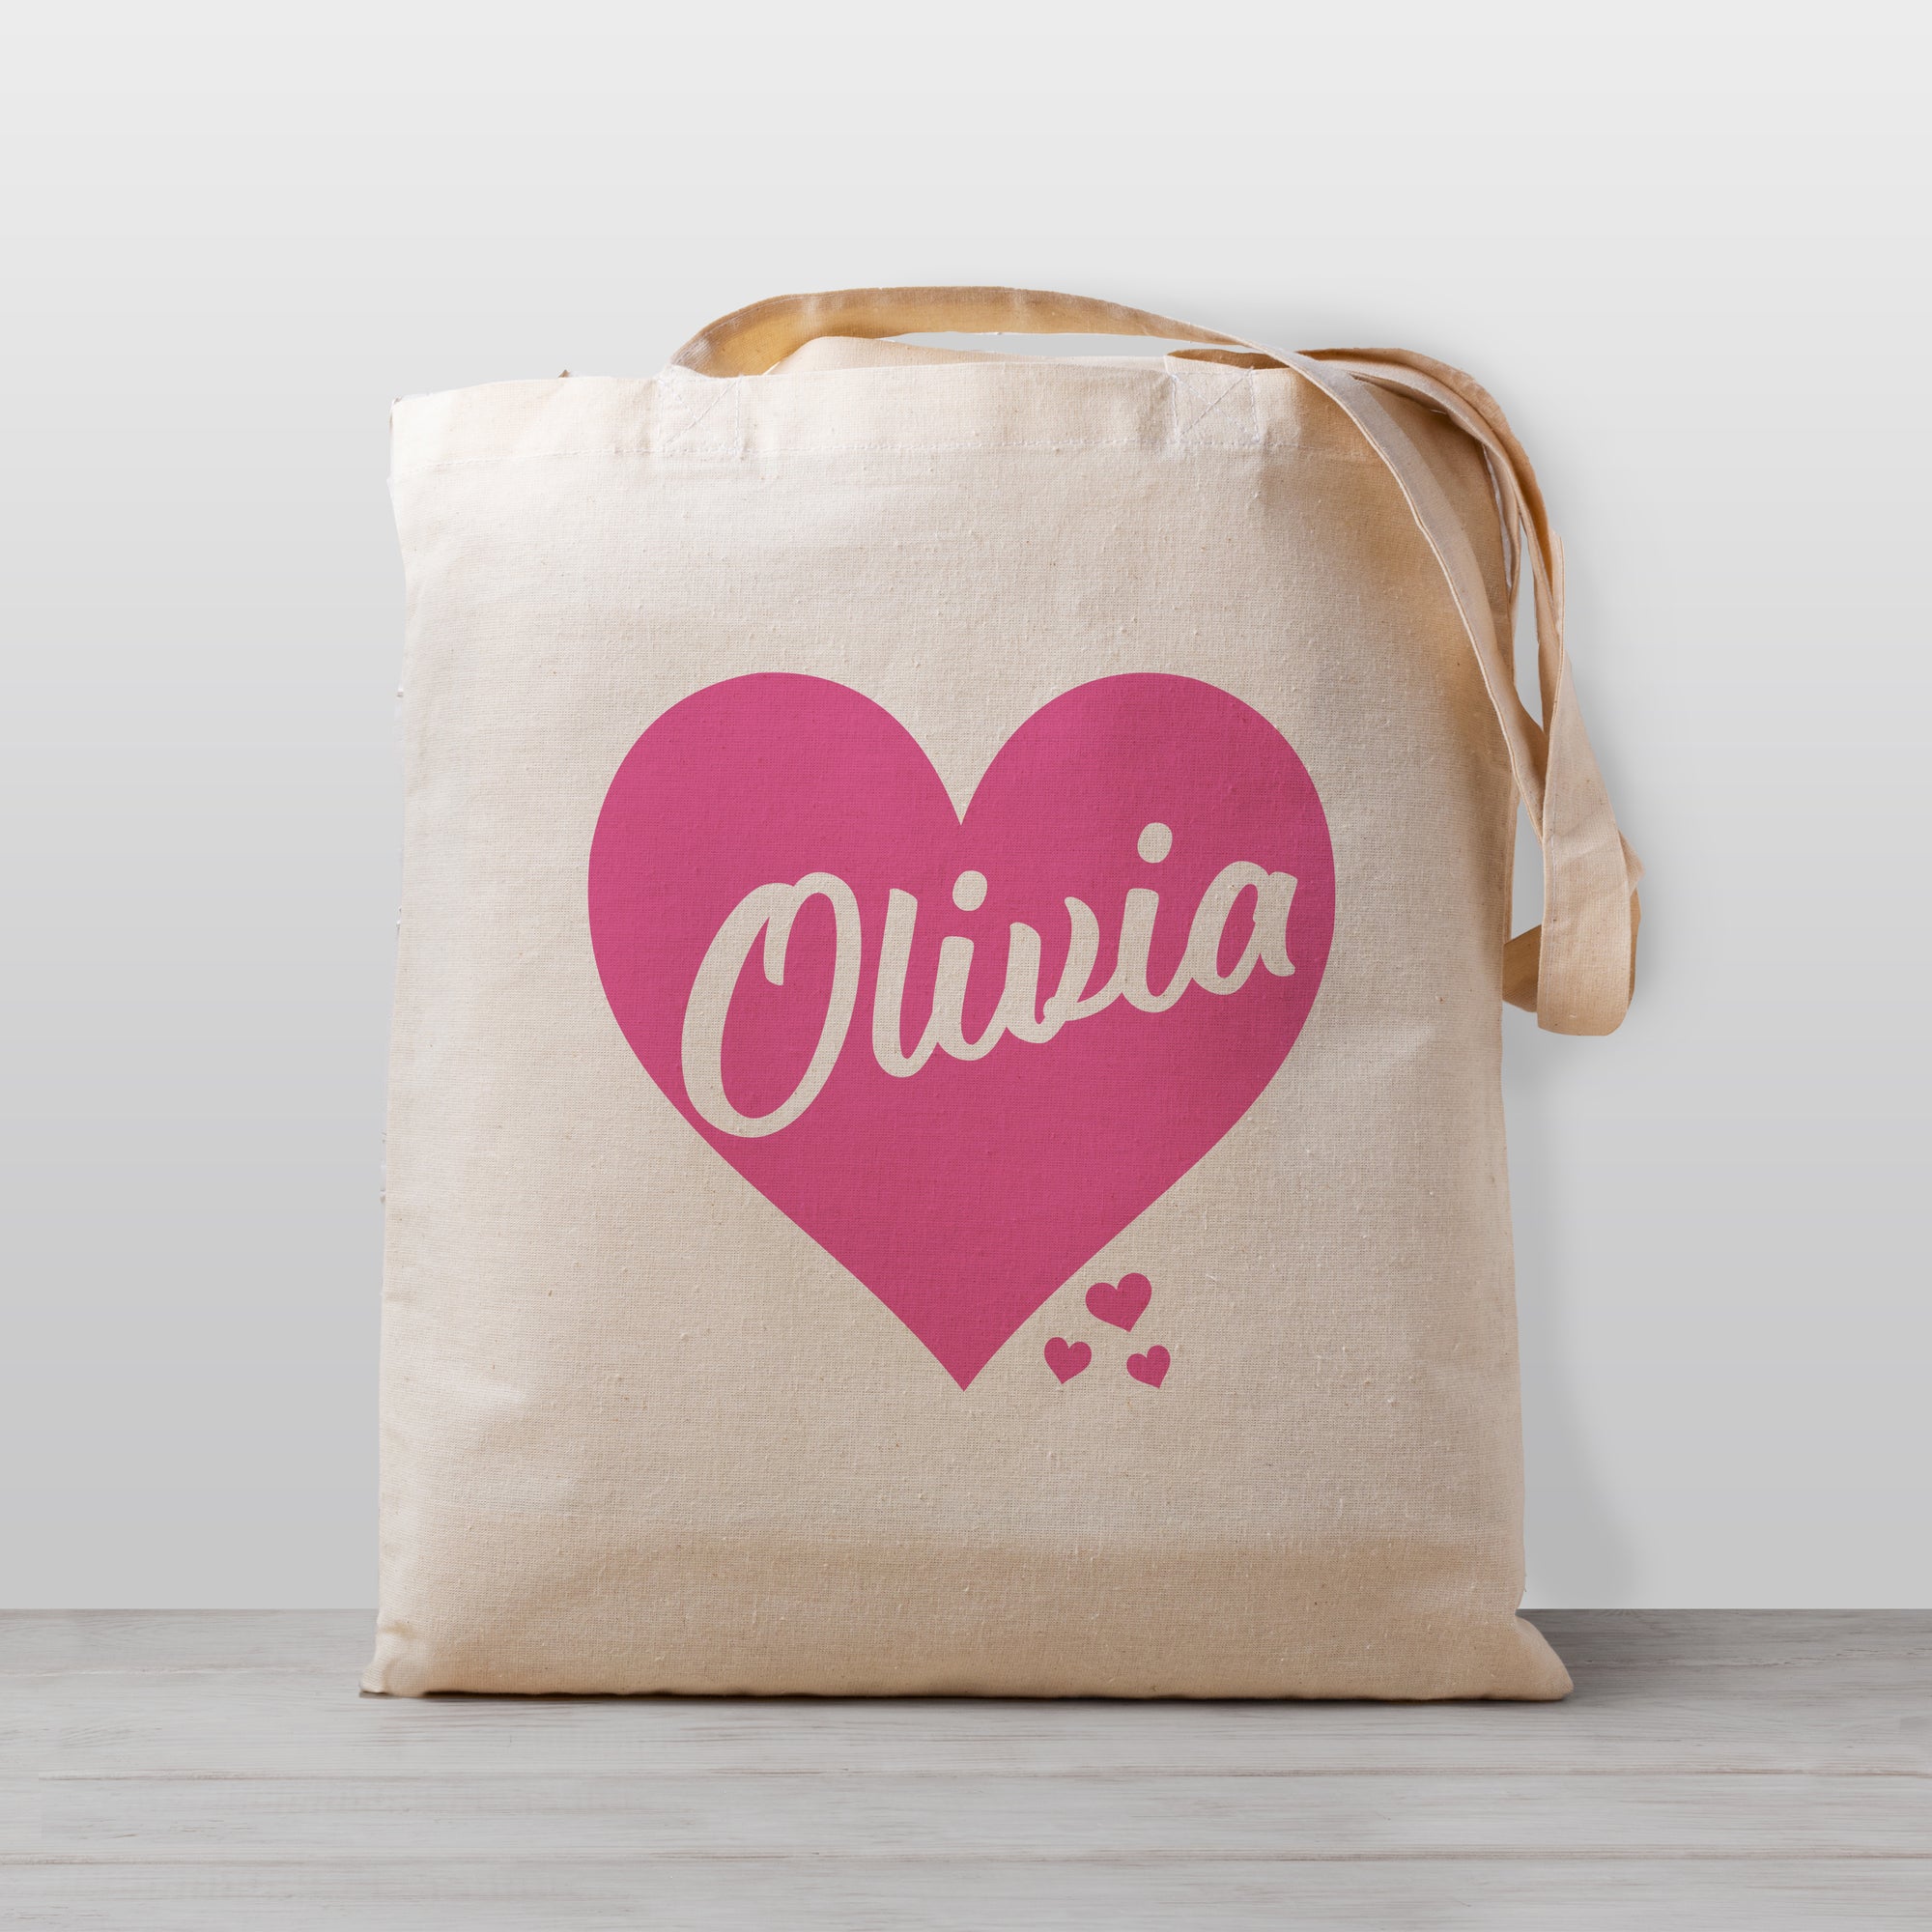 Tote bag personalizada Inicial y Nombre - Nosovi design